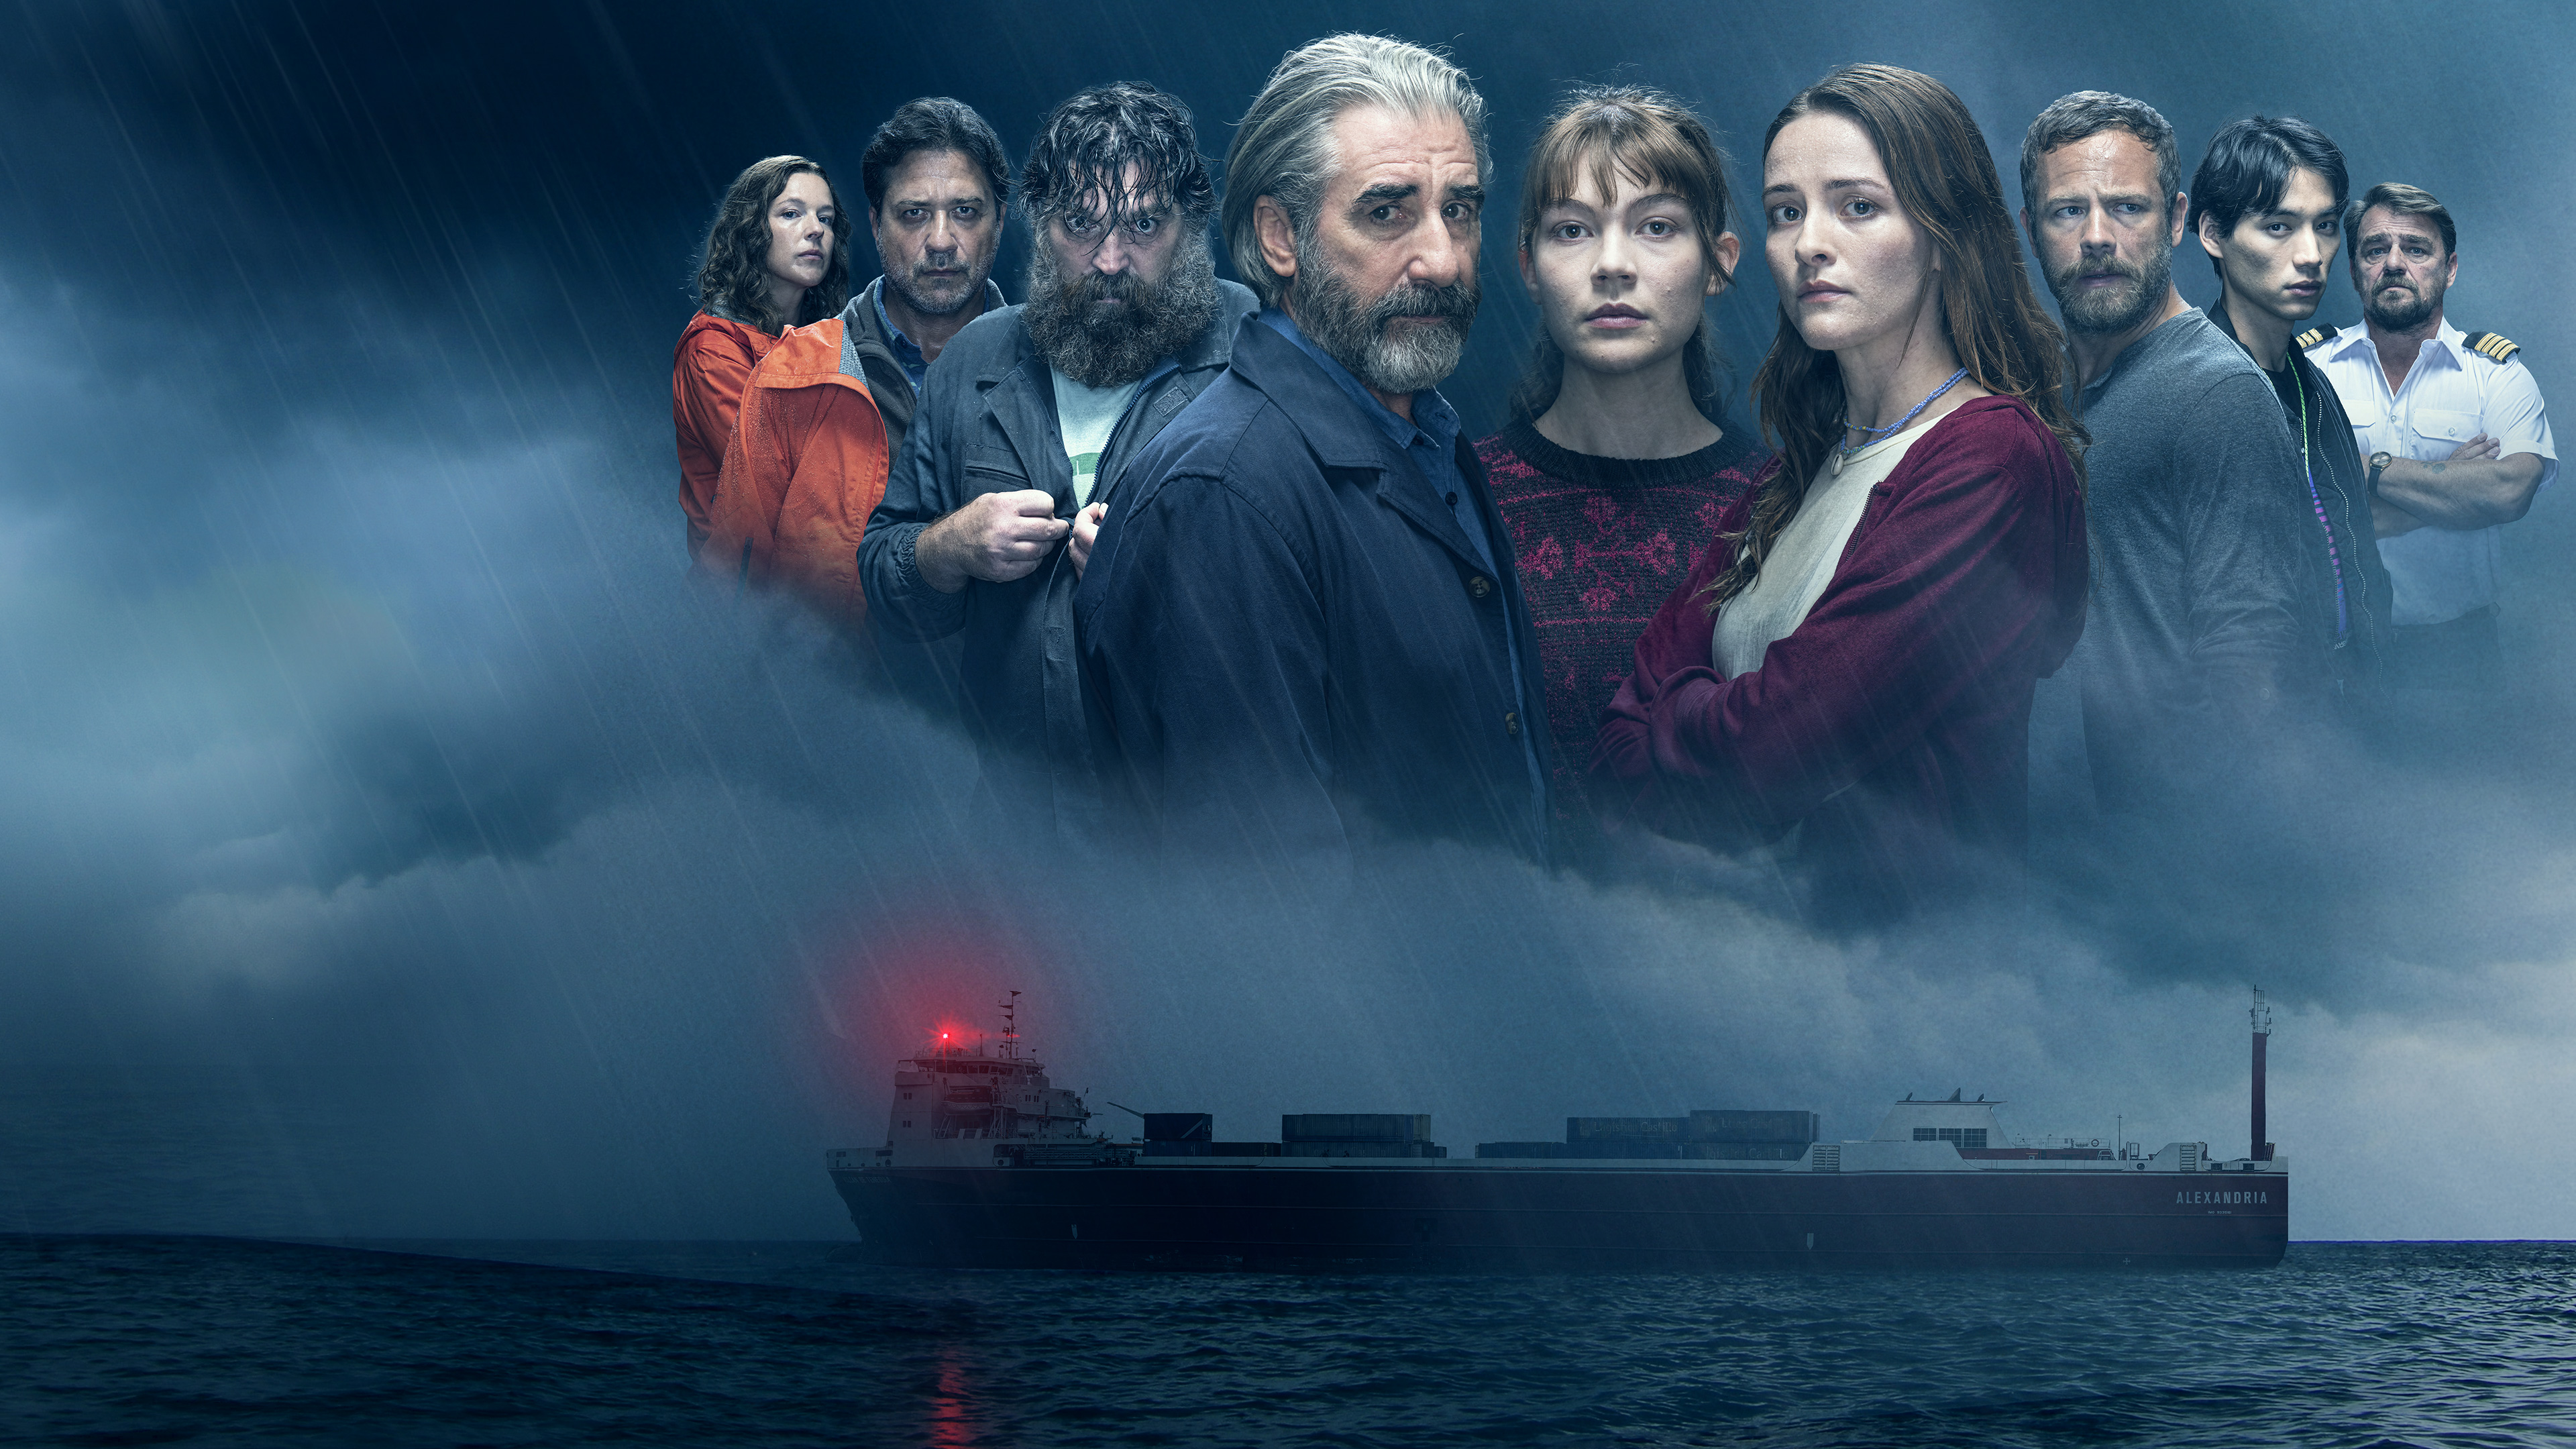 Le bateau a explosé : les équipes d'un documentaire Netflix ont